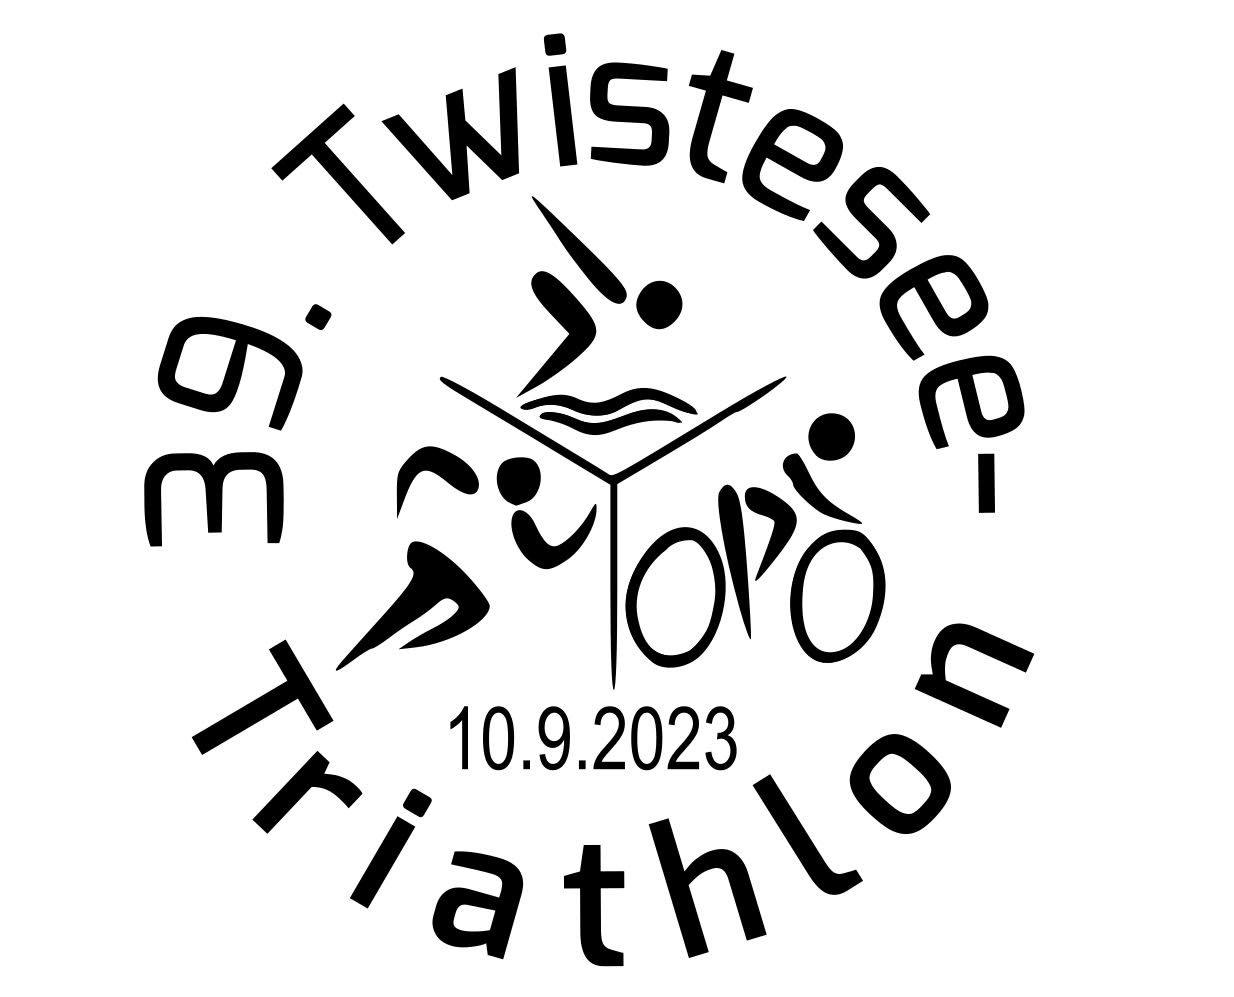 TWISTESEE-TRIATHLON 2023